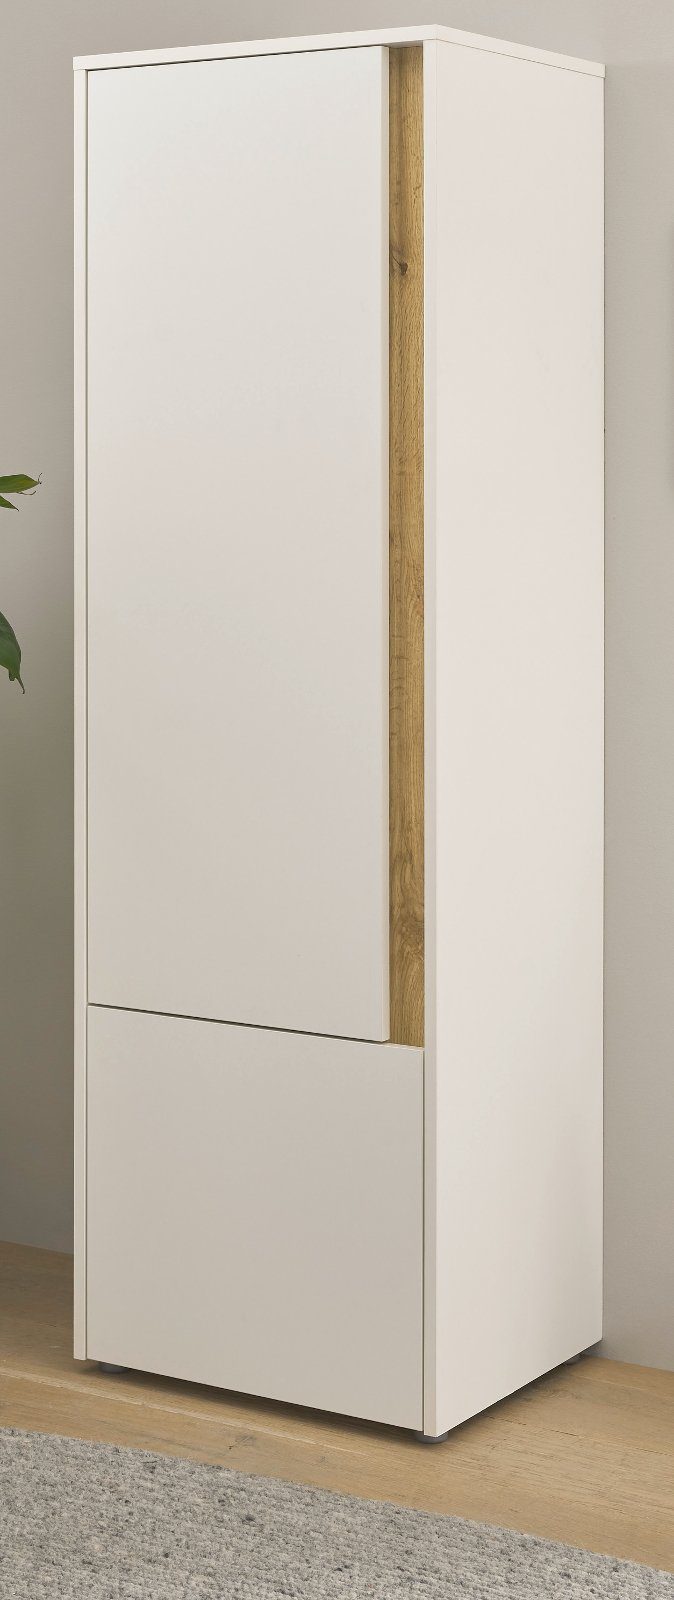 Furn.Design Aktenschrank Center (Stauraumschrank in weiß mit Wotan Eiche, 2-türig, 50 x 158 cm) mit viel Stauraum